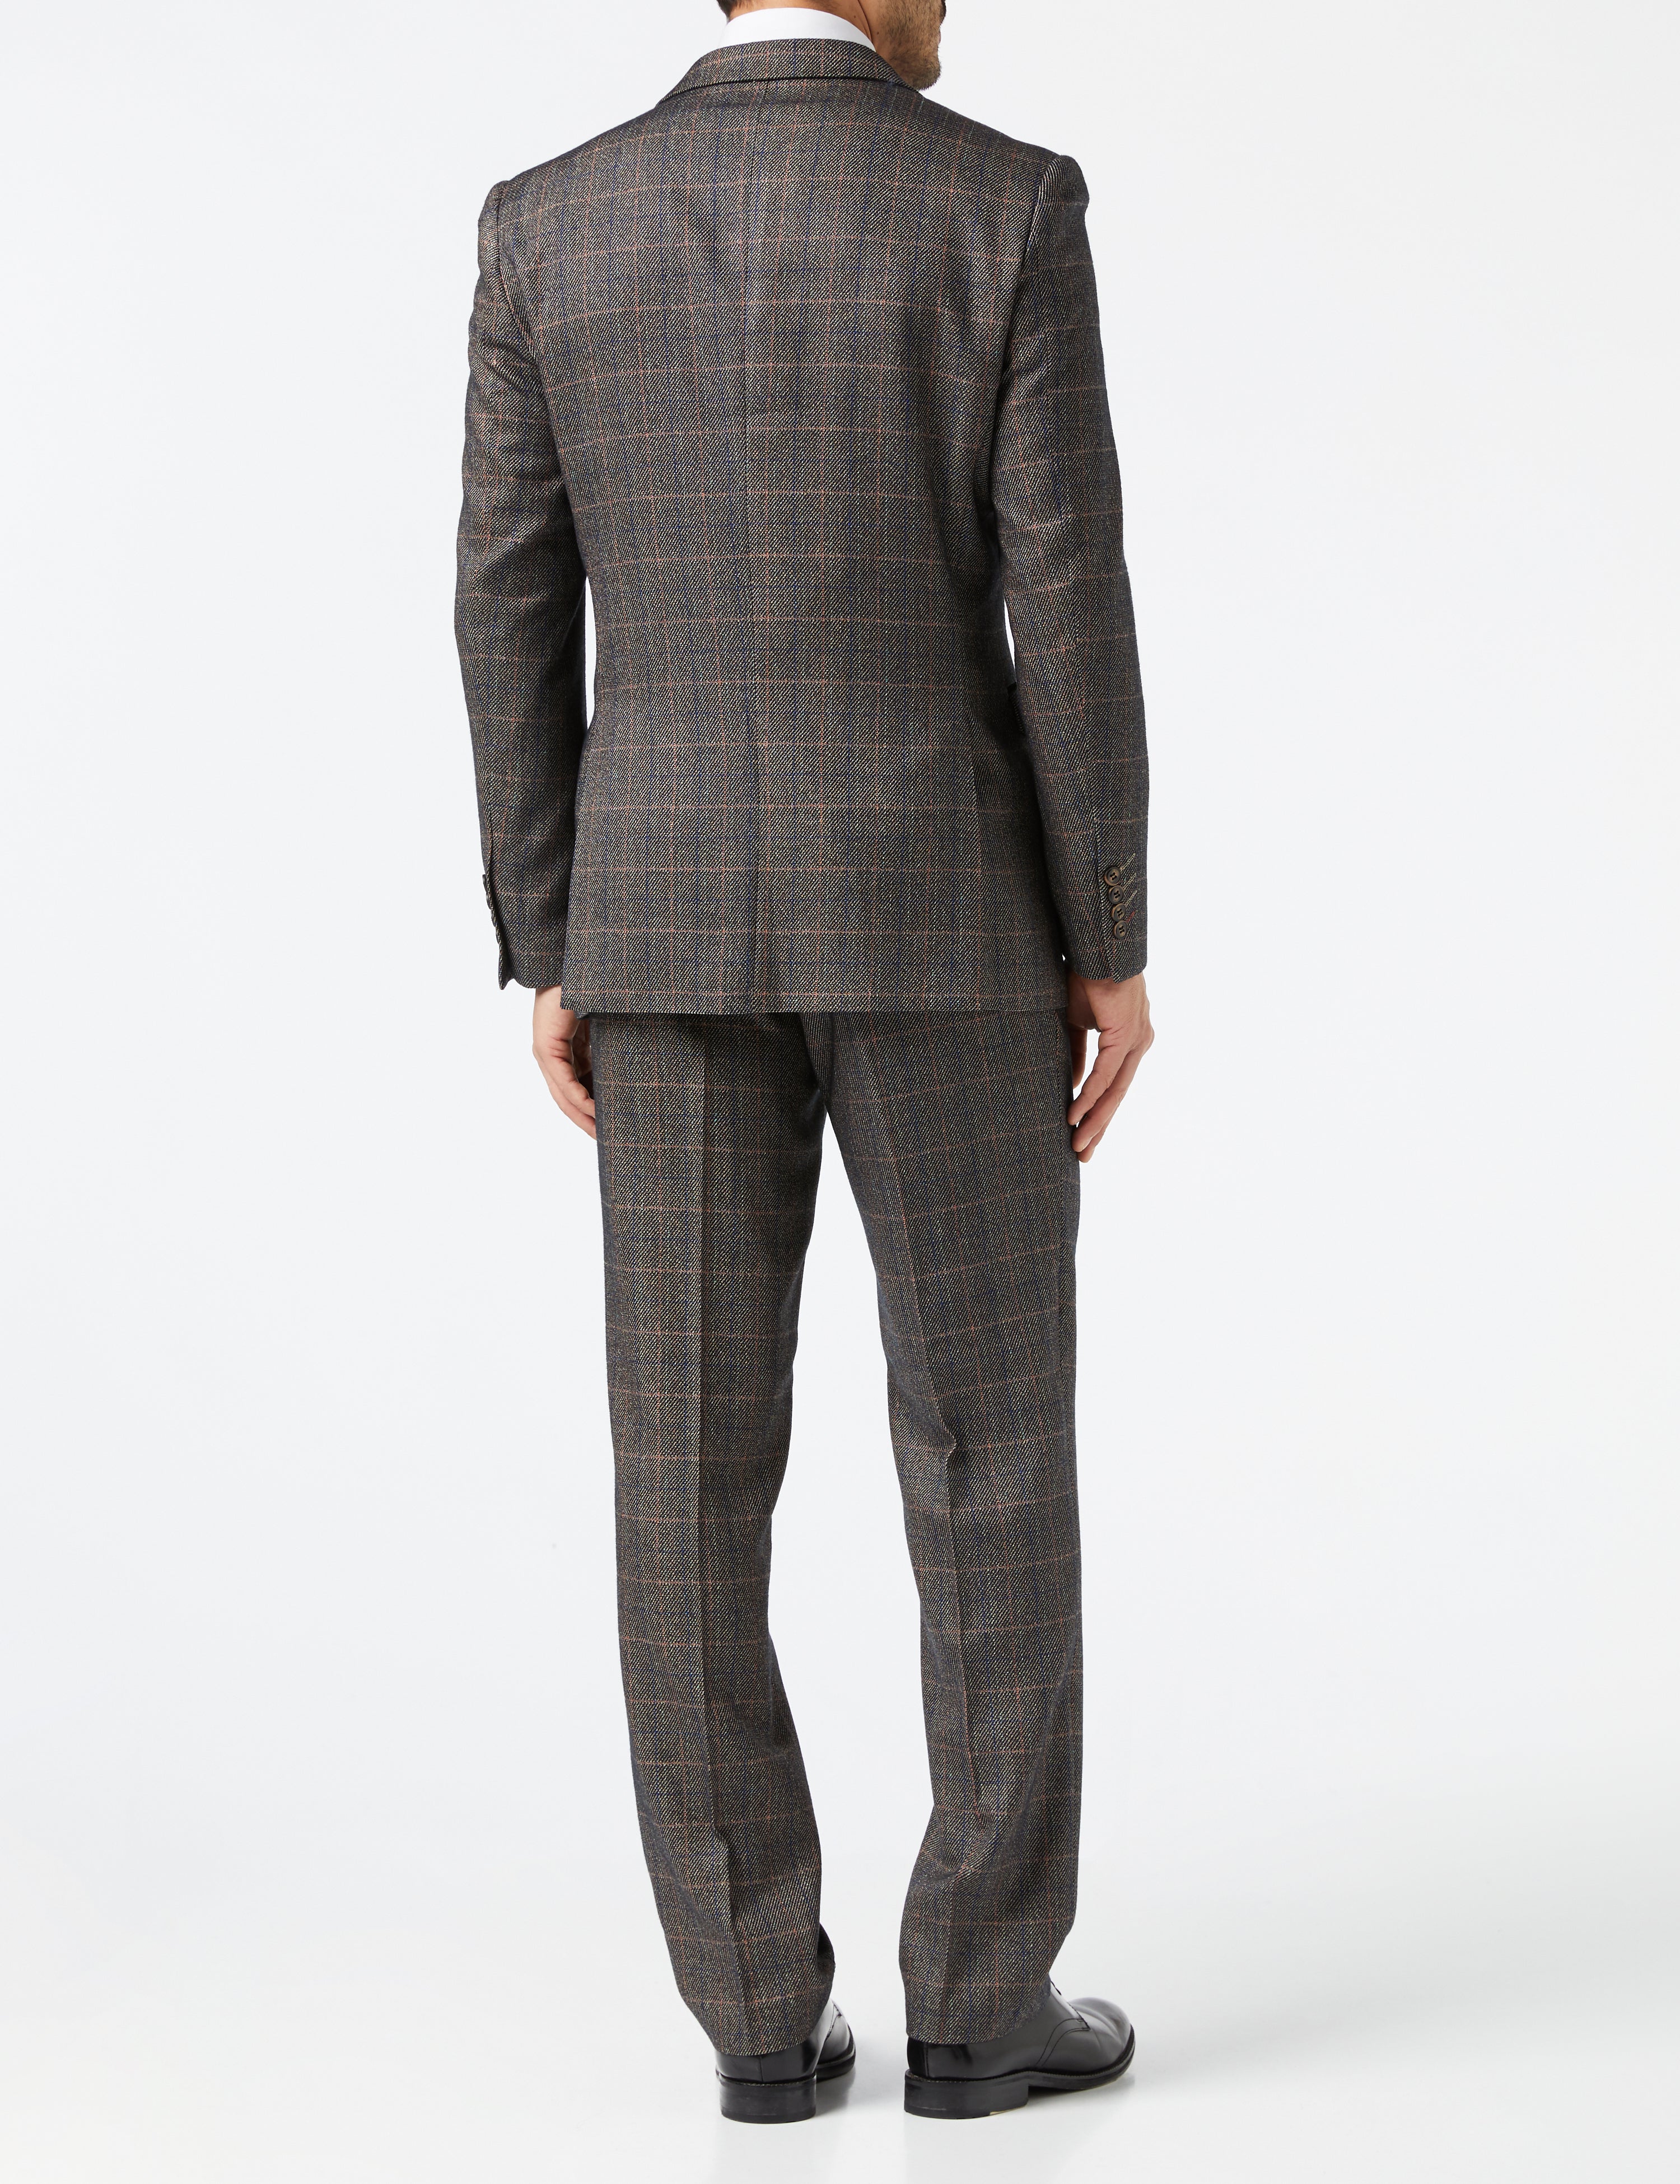 Brown Tweed Check Suit